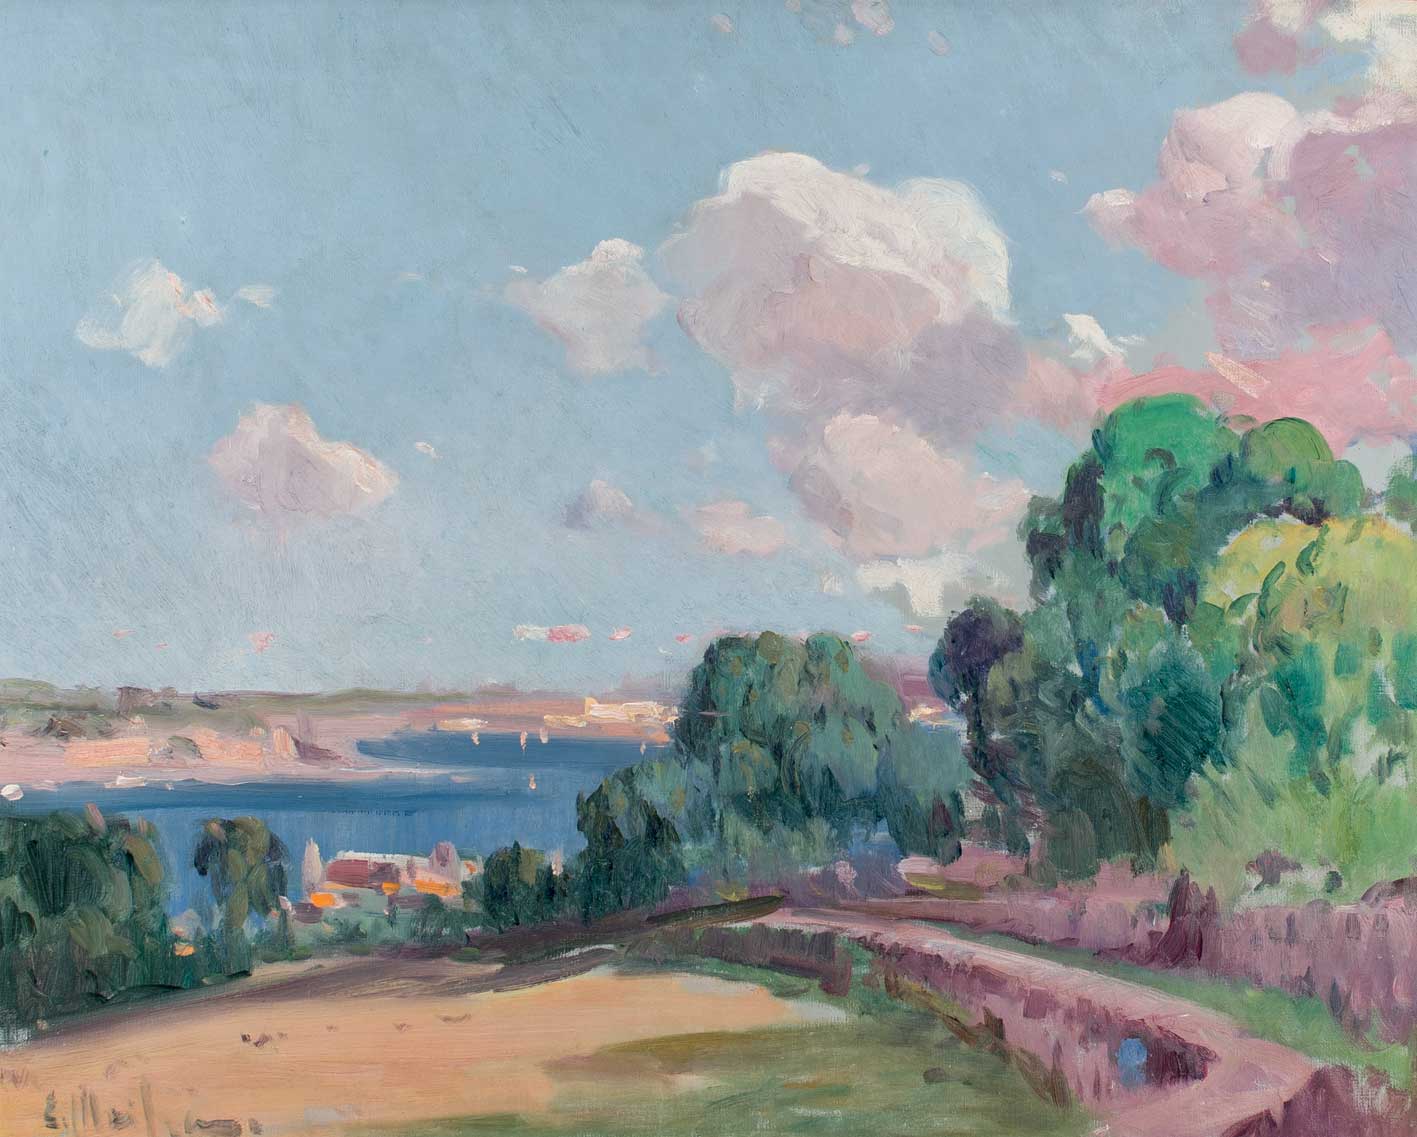 MEIFRÉN, ELISEO (1859 - 1940). "Paisaje". Óleo sobre lienzo. 59 x 74 cm. Firmado E. Meifren en el